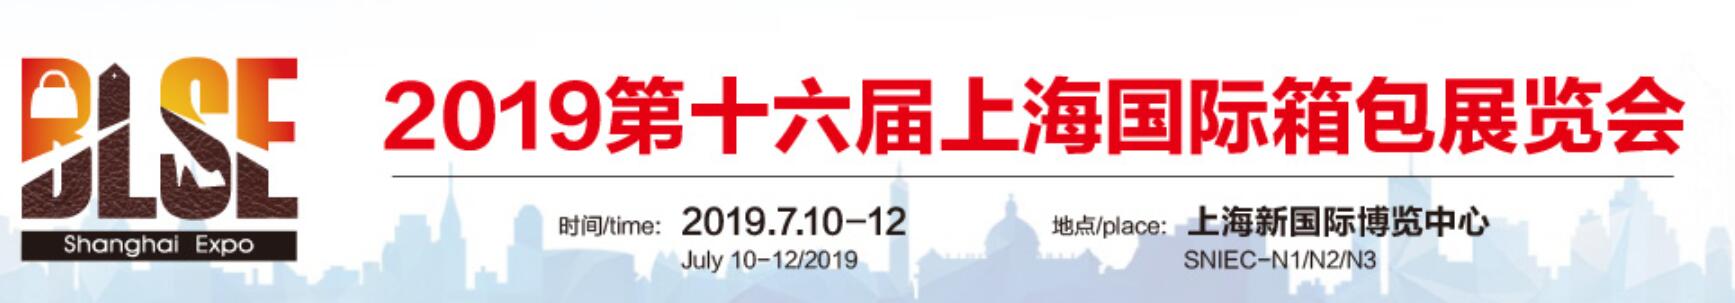 2019上海箱包展 箱包手袋展览会